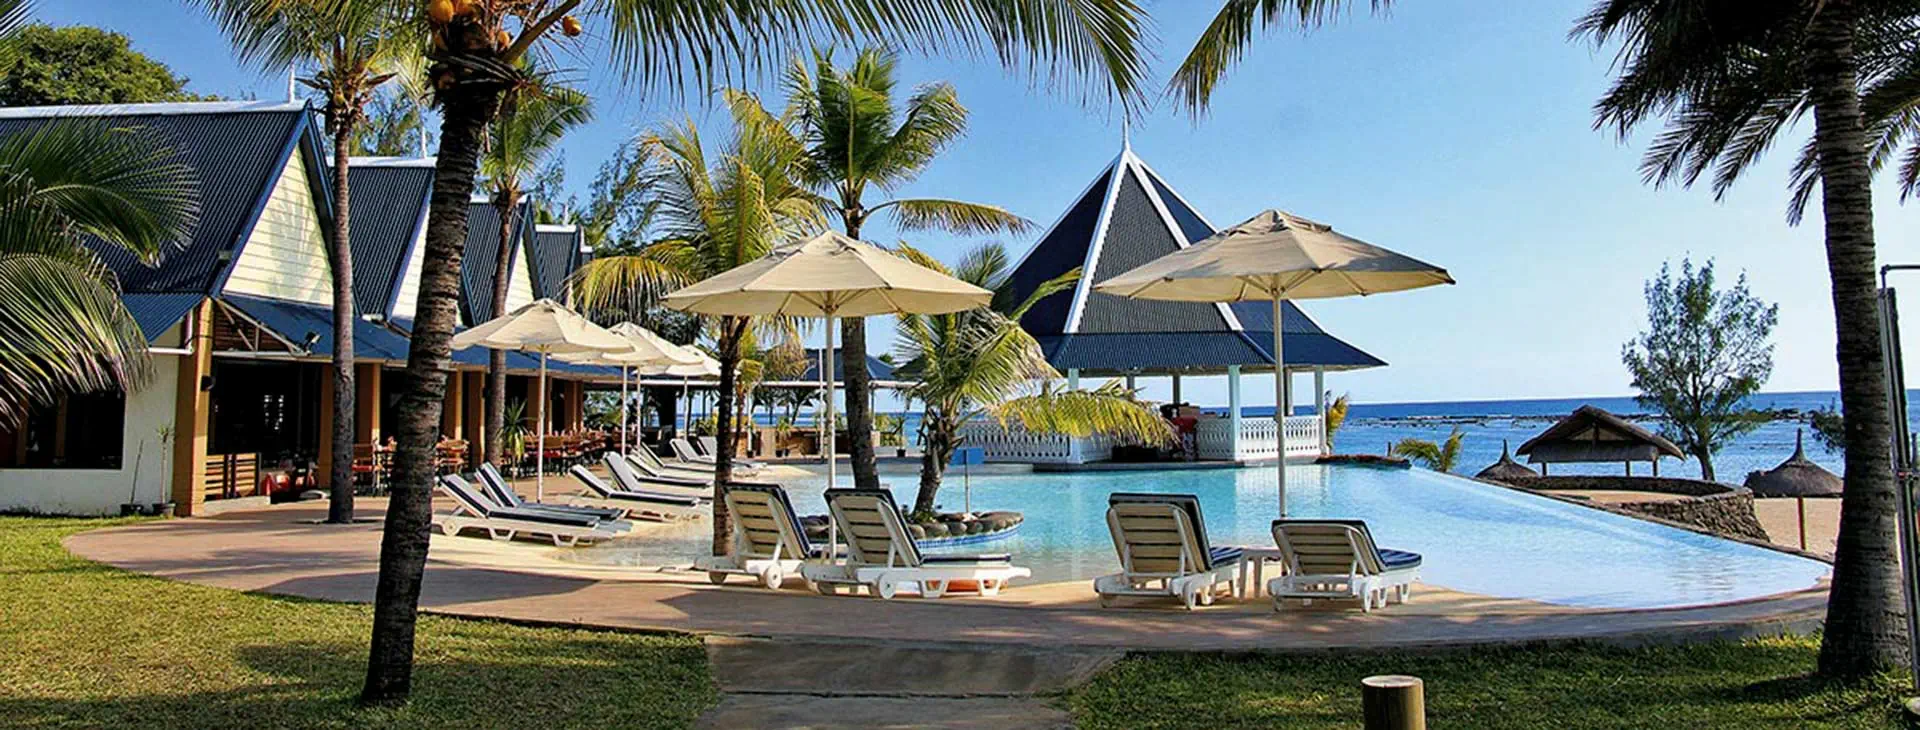 Mauritius Wybrzeże Południowe Flic-en-Flac Anelia Hotel